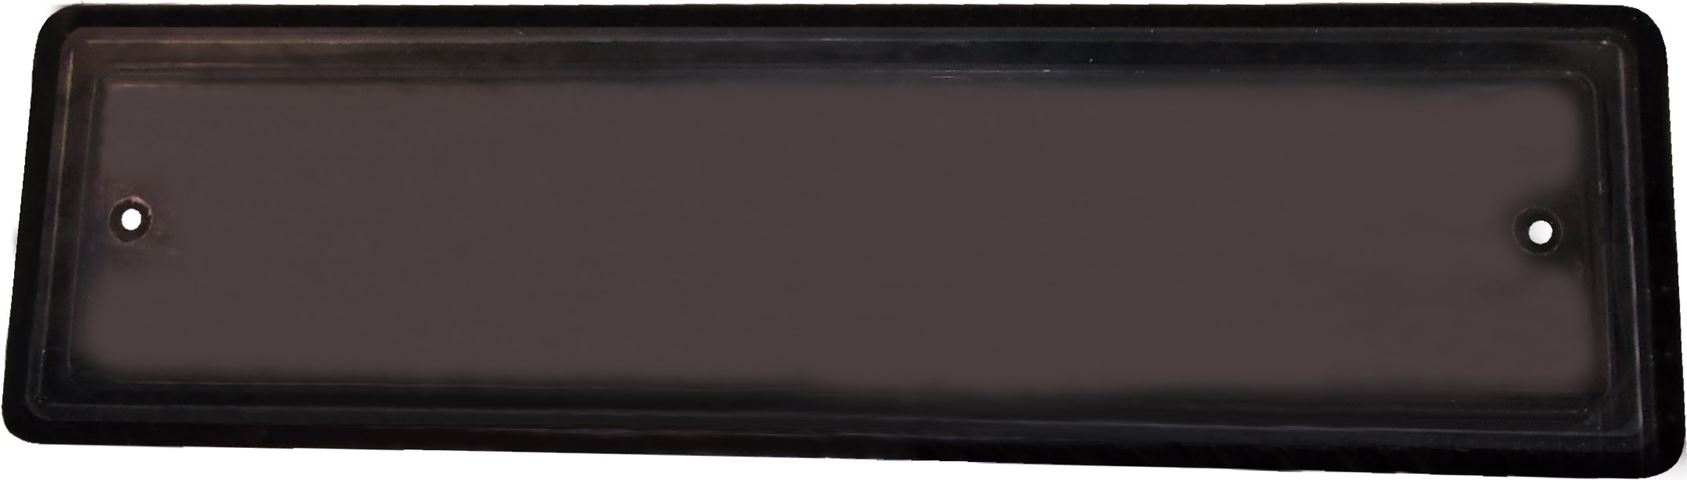 Finetsra Fissa per Porta 930x260 mm colore Grigio Scuro - Clicca l'immagine per chiudere